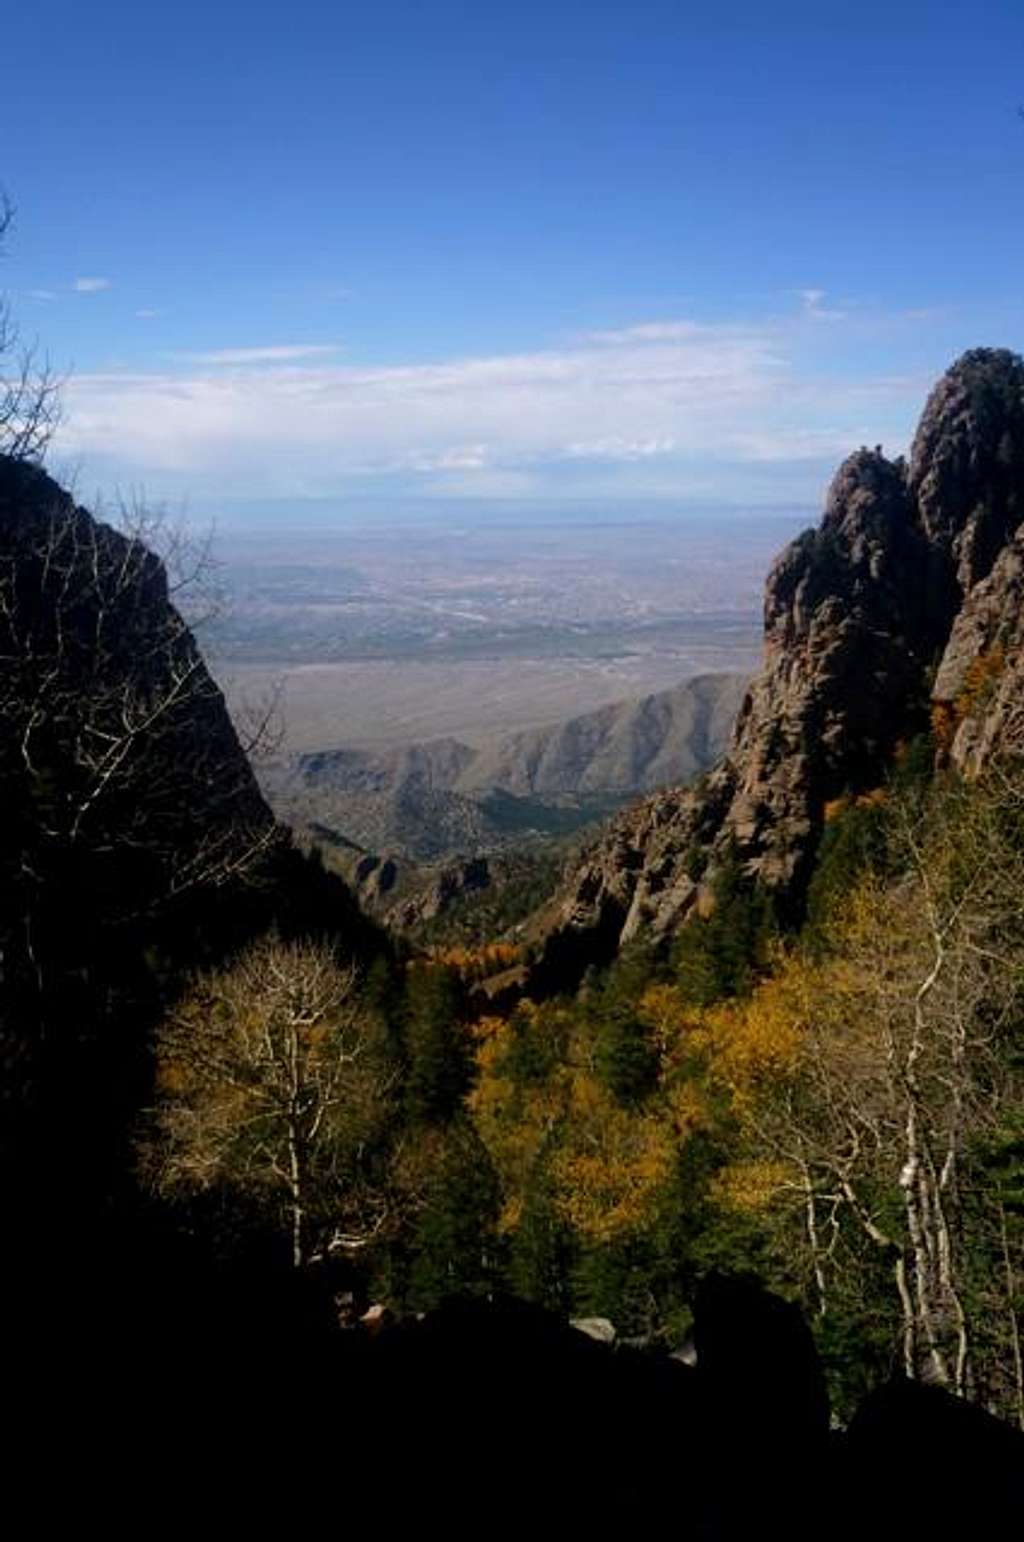 View of Albuquerque near Sandia Peak summit.